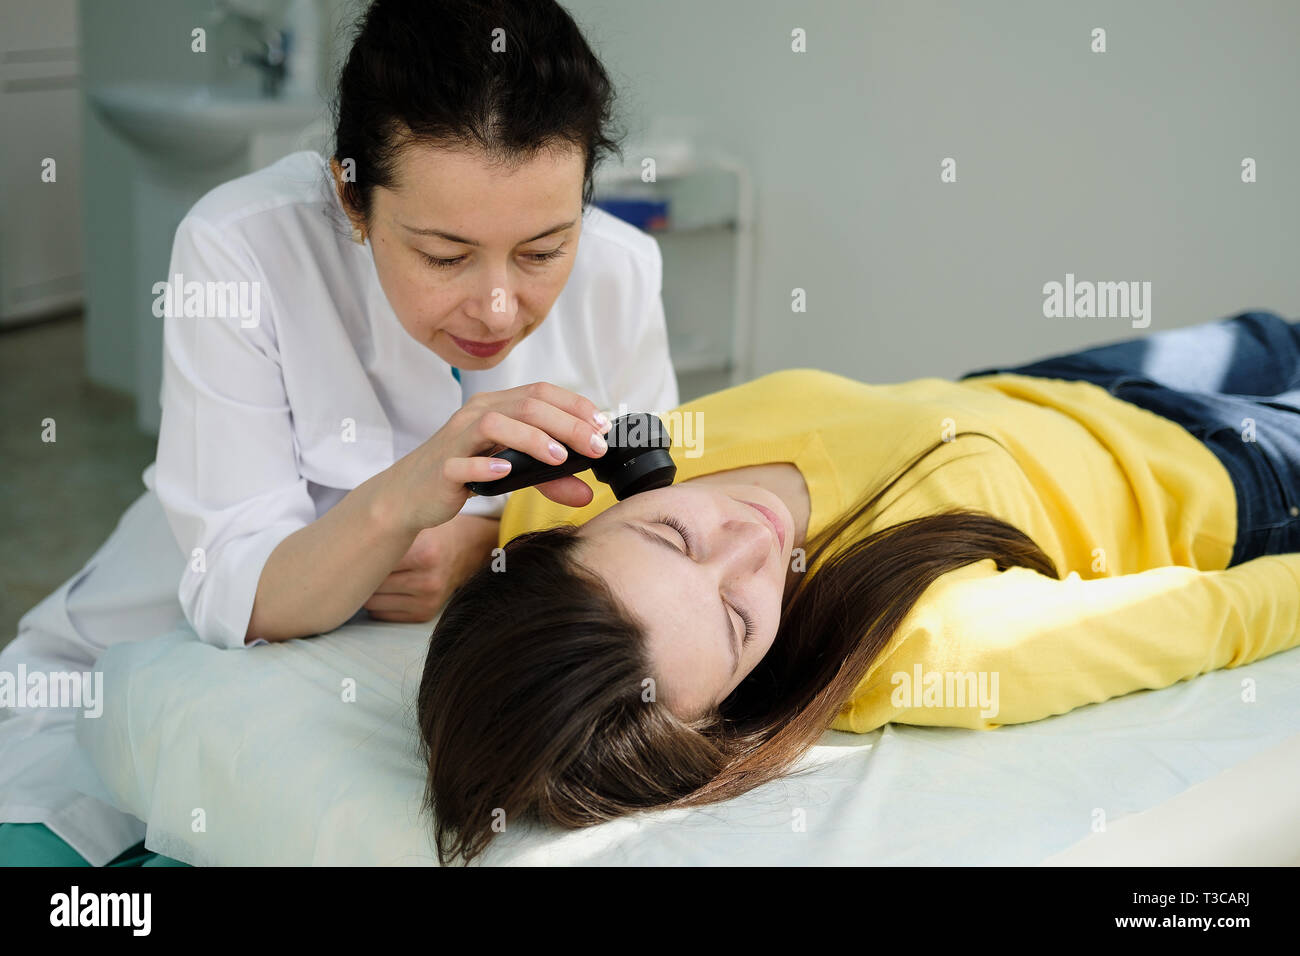 Weibliche Dermatologe mit einem professionellen Dermatoskop beim Tun der Haut Untersuchung, Kontrolle gutartige Muttermale im Gesicht. Dermatologe Muttermal untersuchen Stockfoto